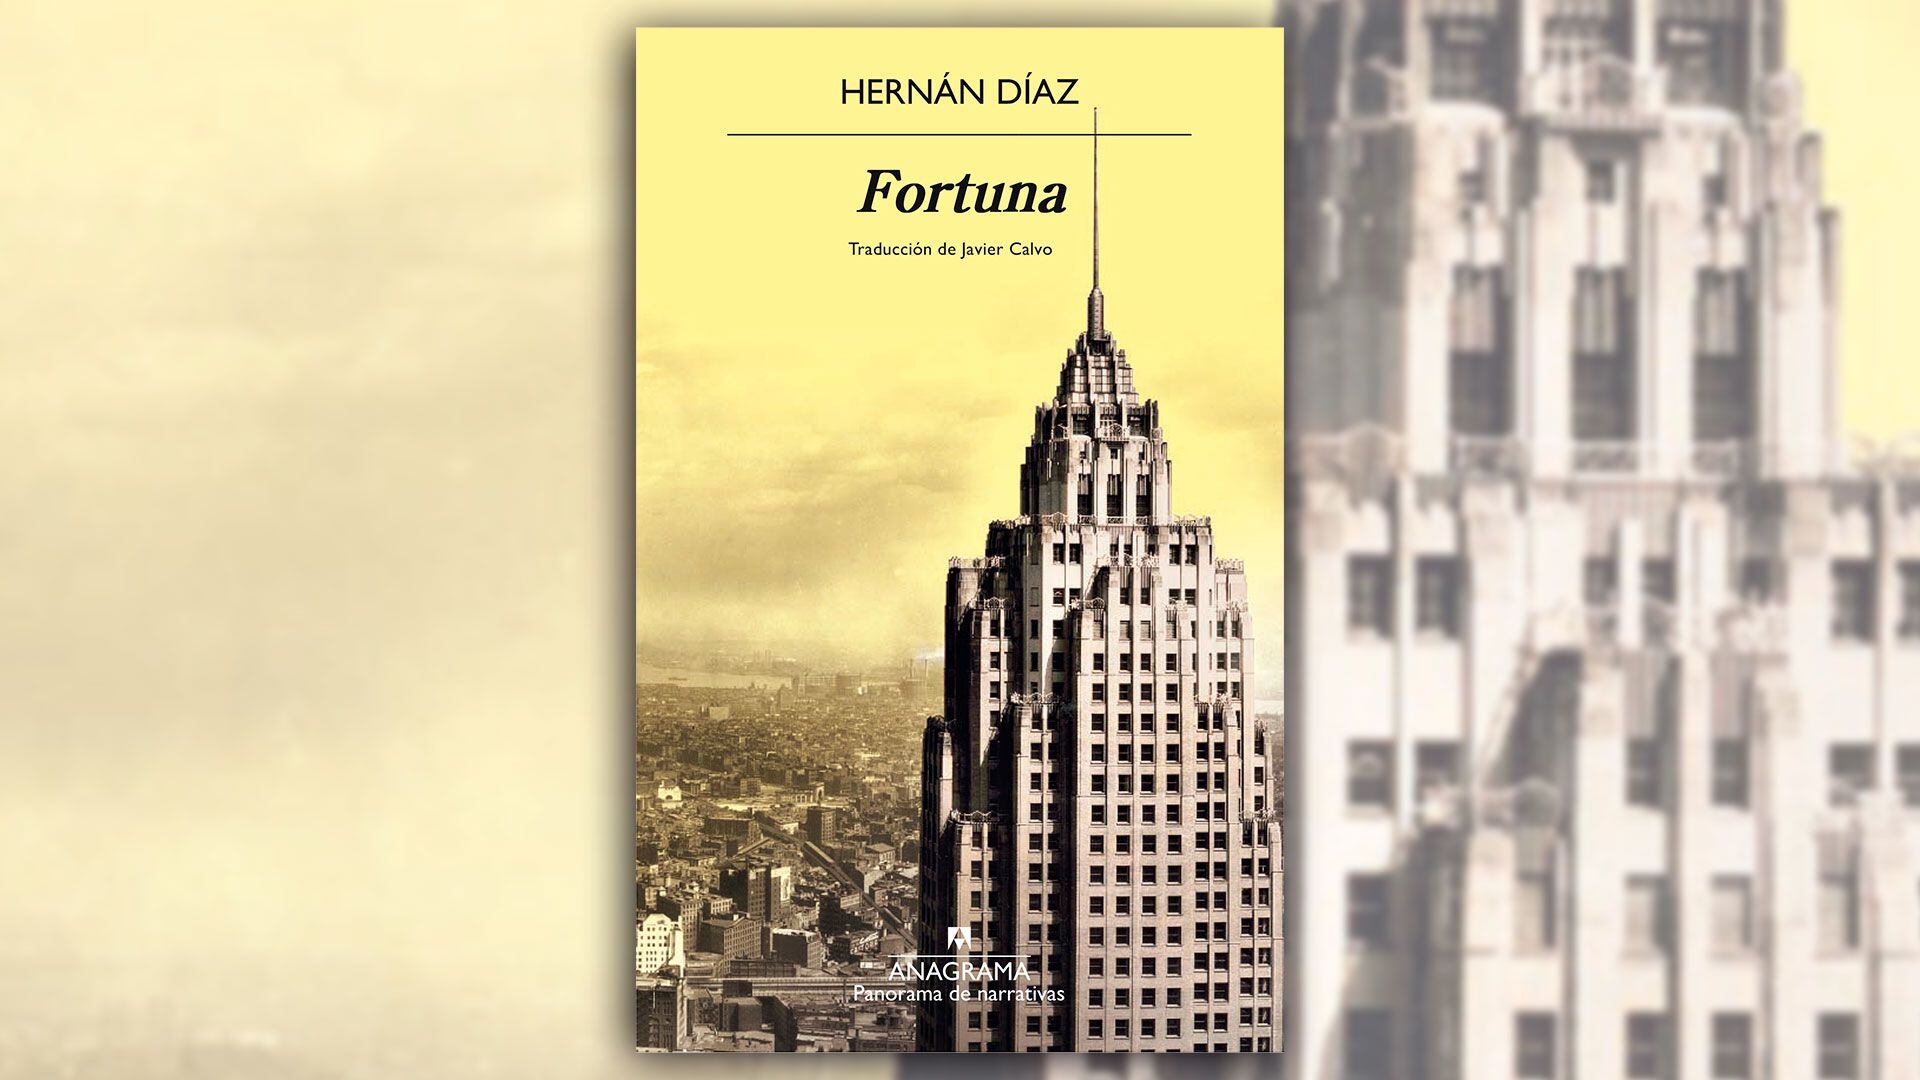 "Hernán Díaz - Fortuna"